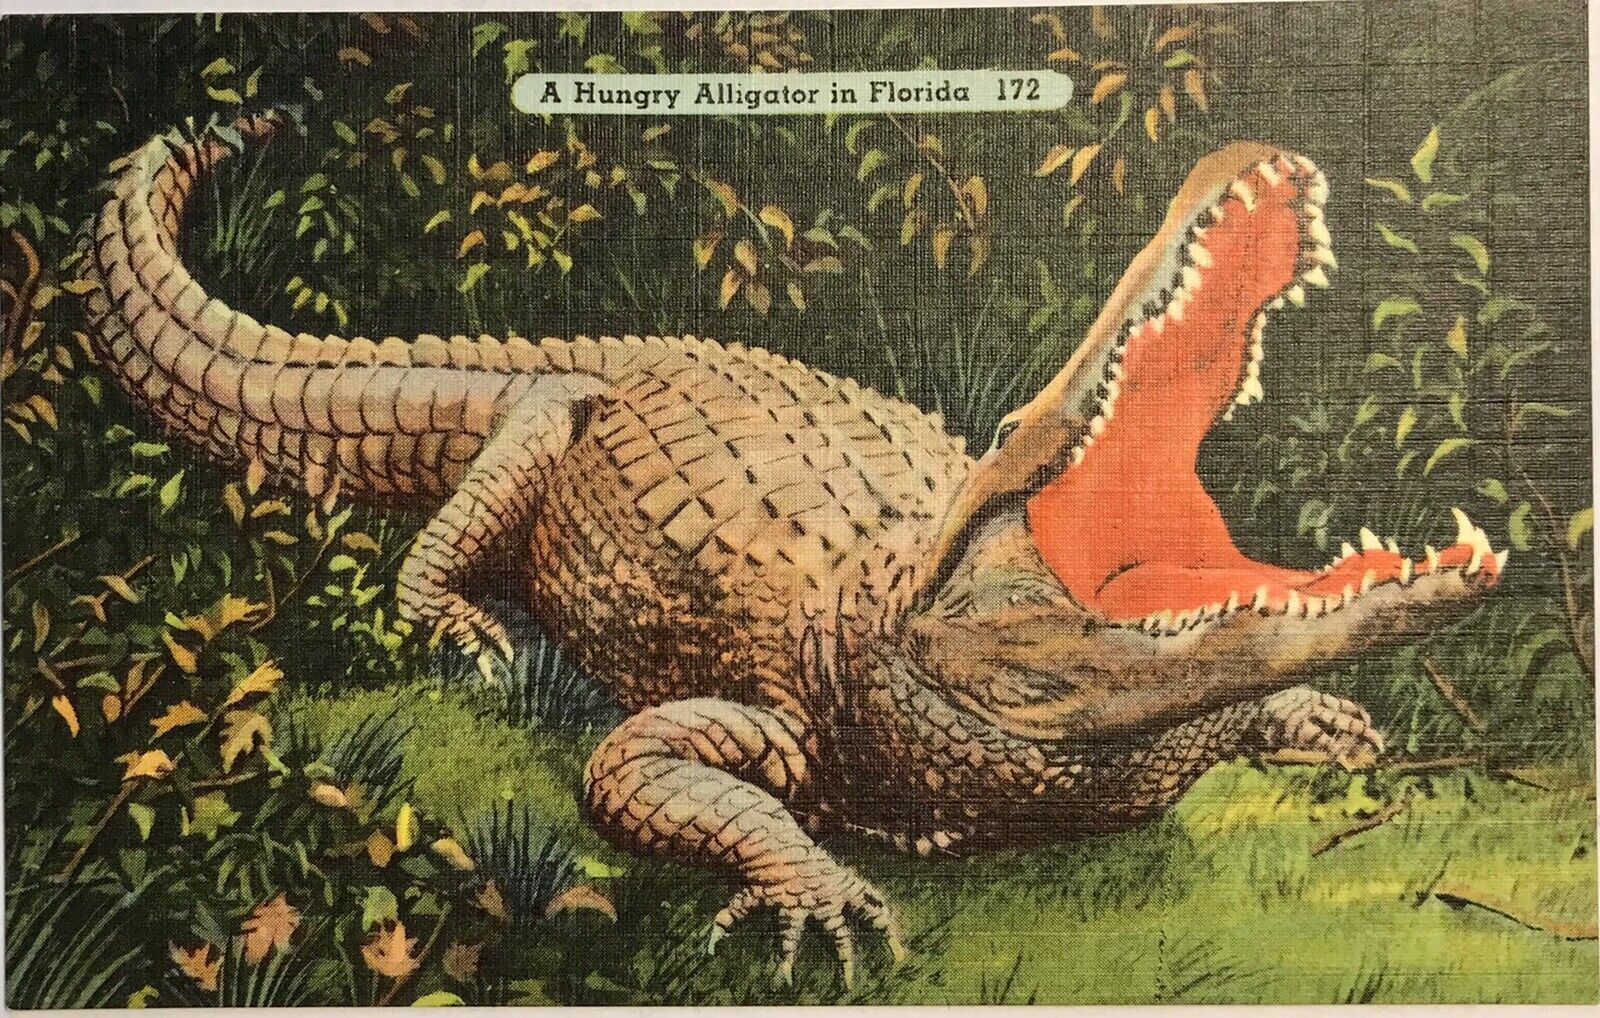 Florida Huge Alligator Vintage Linen Postcard Reptile Open Mouth